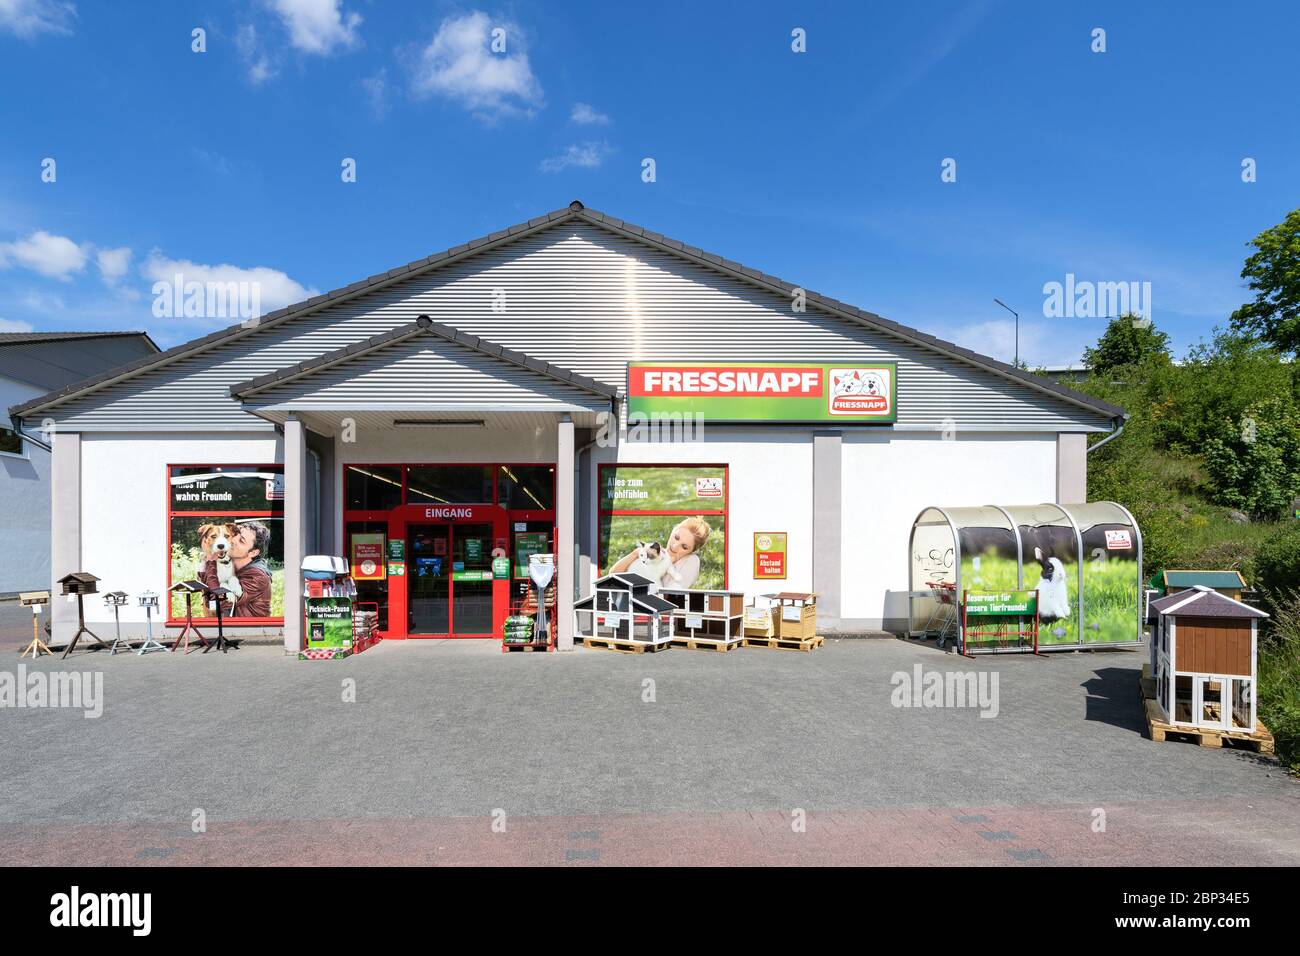 Negozio Fressnapf a Waldbröl, Germania. Con oltre 1,400 negozi in 12 paesi europei, Fressnapf è la più grande azienda europea di alimenti per animali domestici. Foto Stock